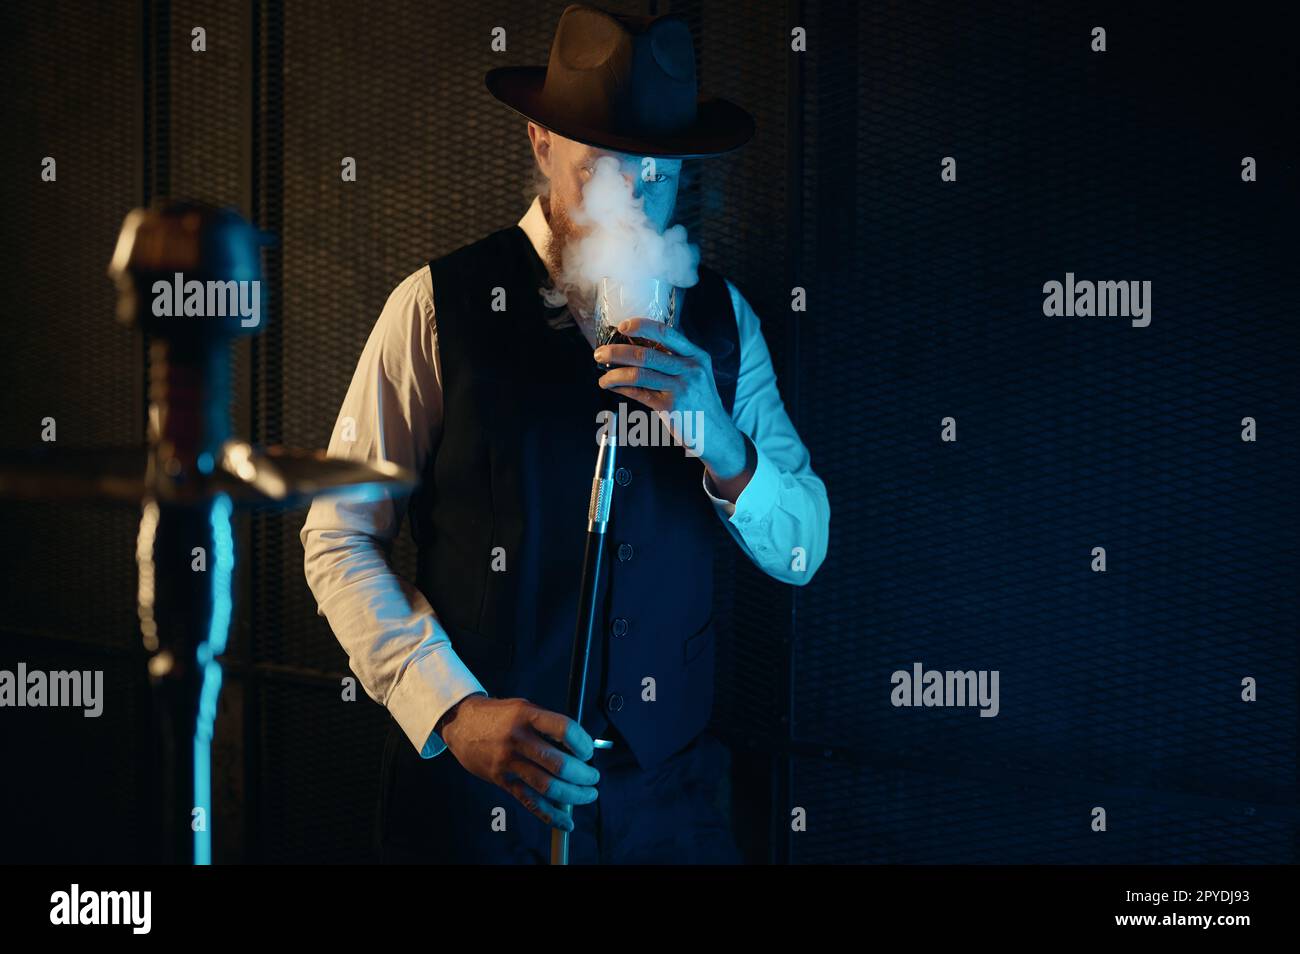 Vorderansicht eines ruhenden Mannes, der eine Wasserpfeife raucht, mit Neonbeleuchtung Stockfoto